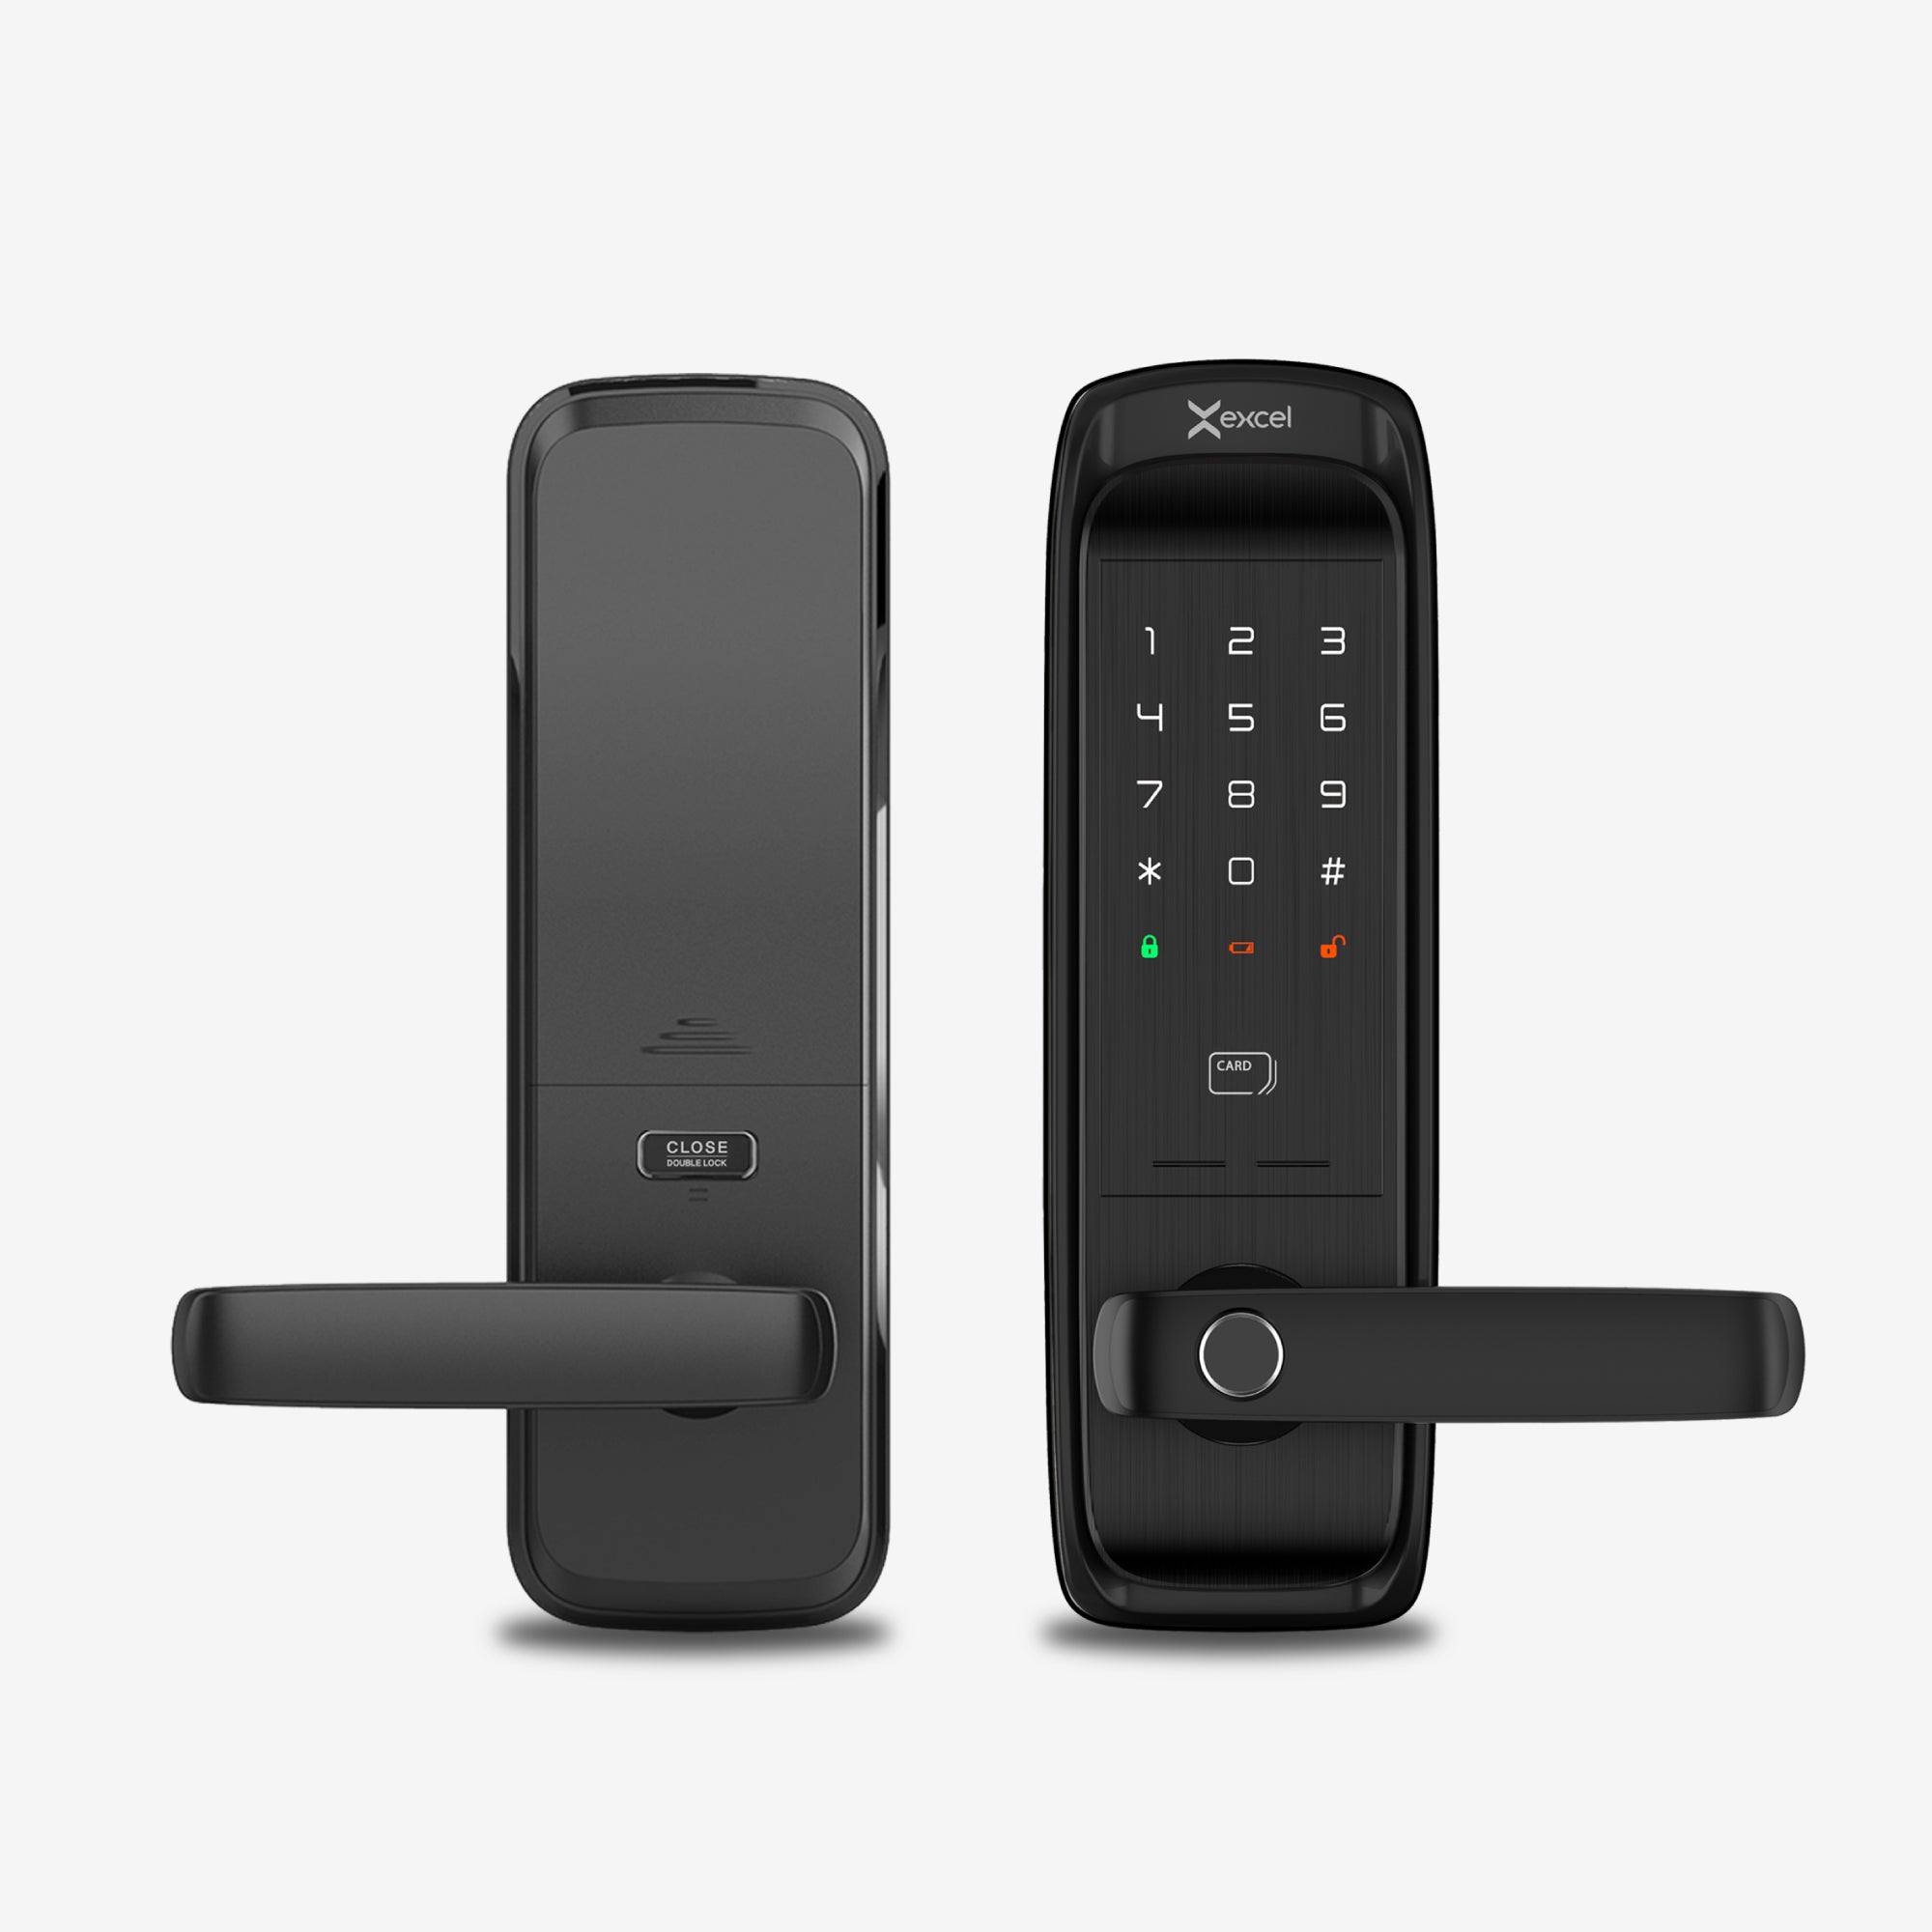 Cerradura Inteligente EXC-SL500. Conectividad WiFi y Bluetooth, lector de huella digital, Contraseña Numérica y Tarjeta RFID. Módulo interior, vista frontal.